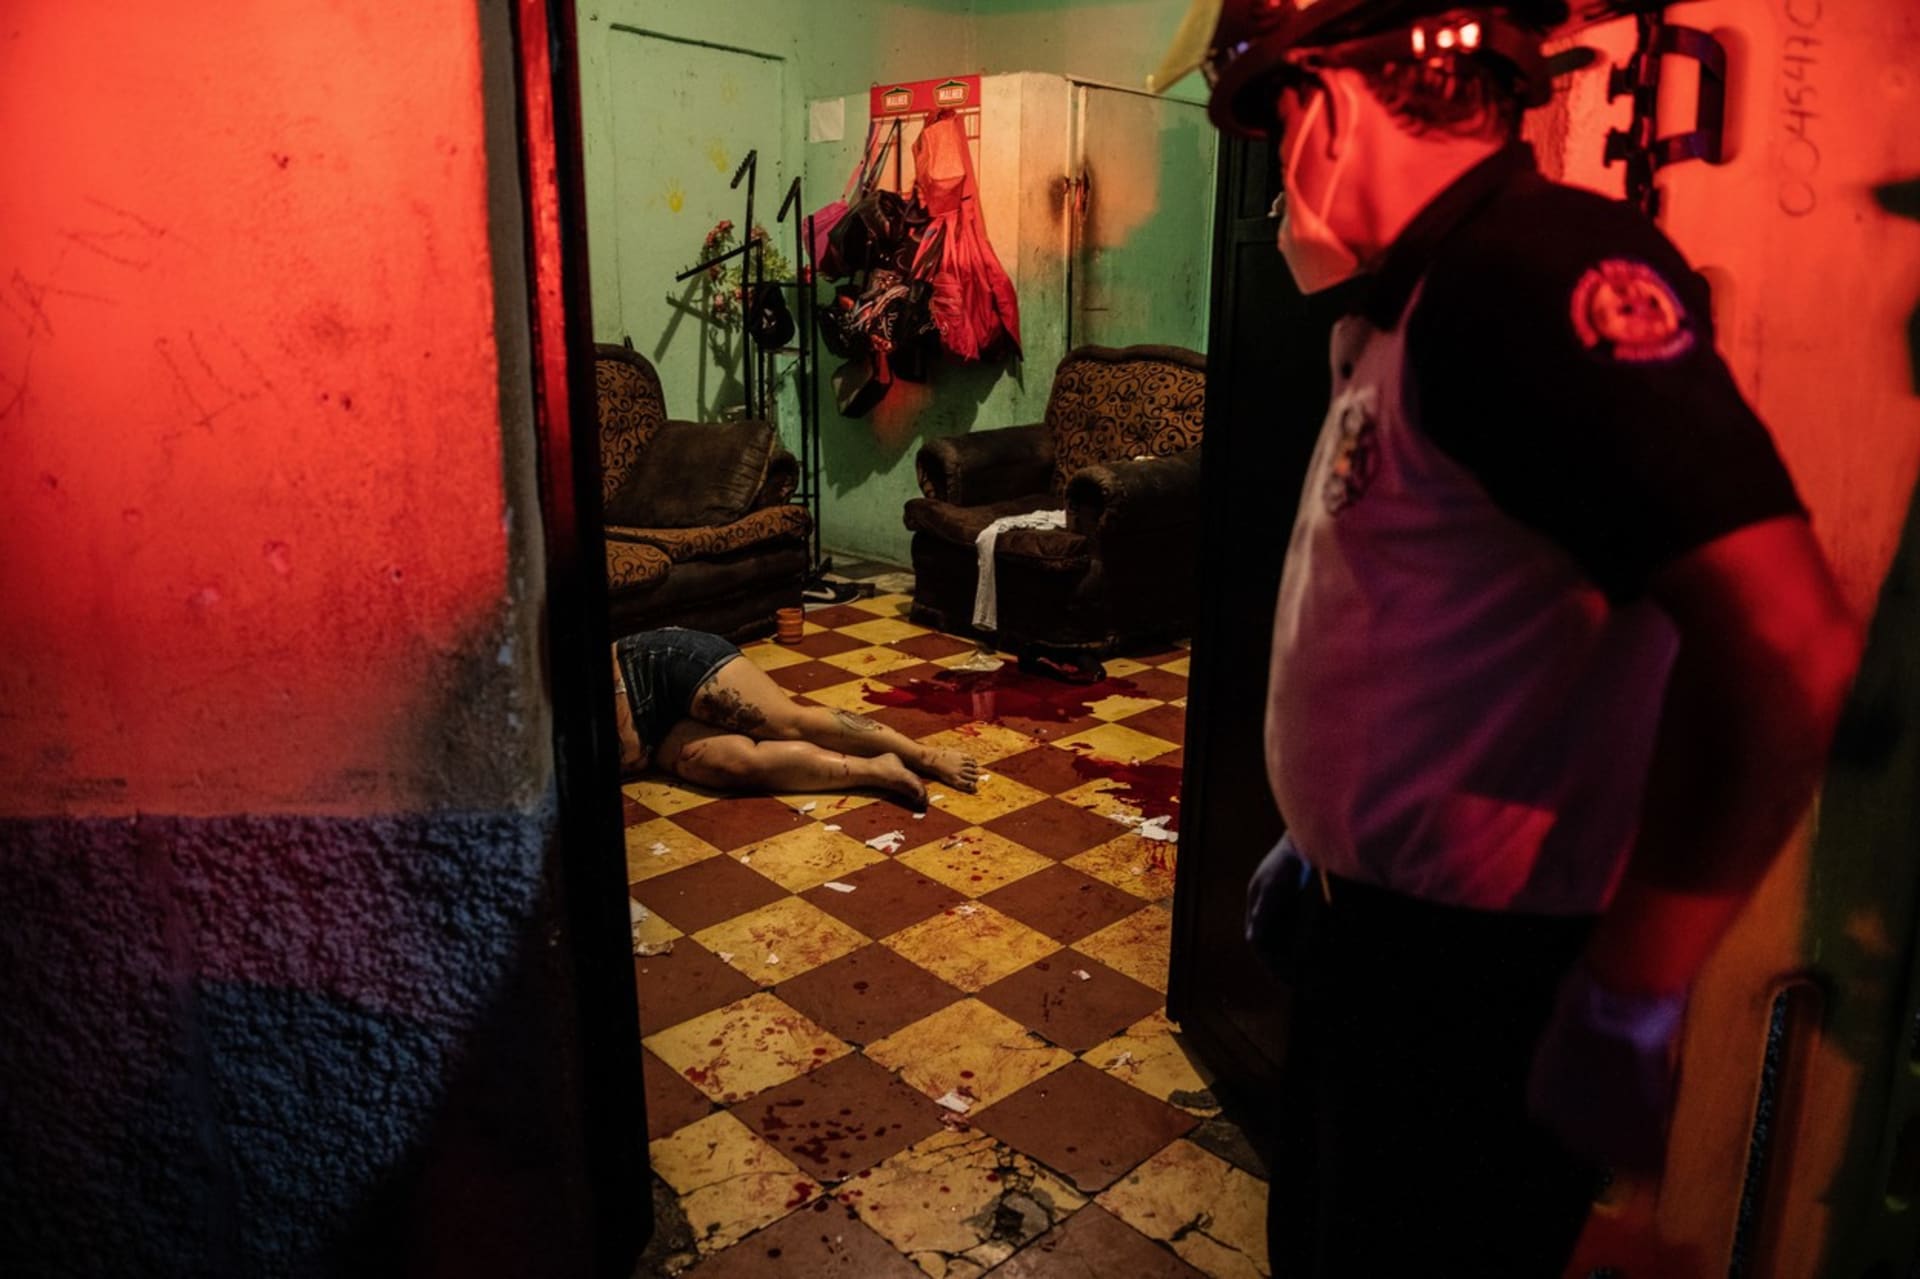 Salvador se stal v roce 2015 zemí s nejvyšší mírou vražd na světě, kdy na každých 100 tisíc obyvatel připadalo 100 zavražděných.